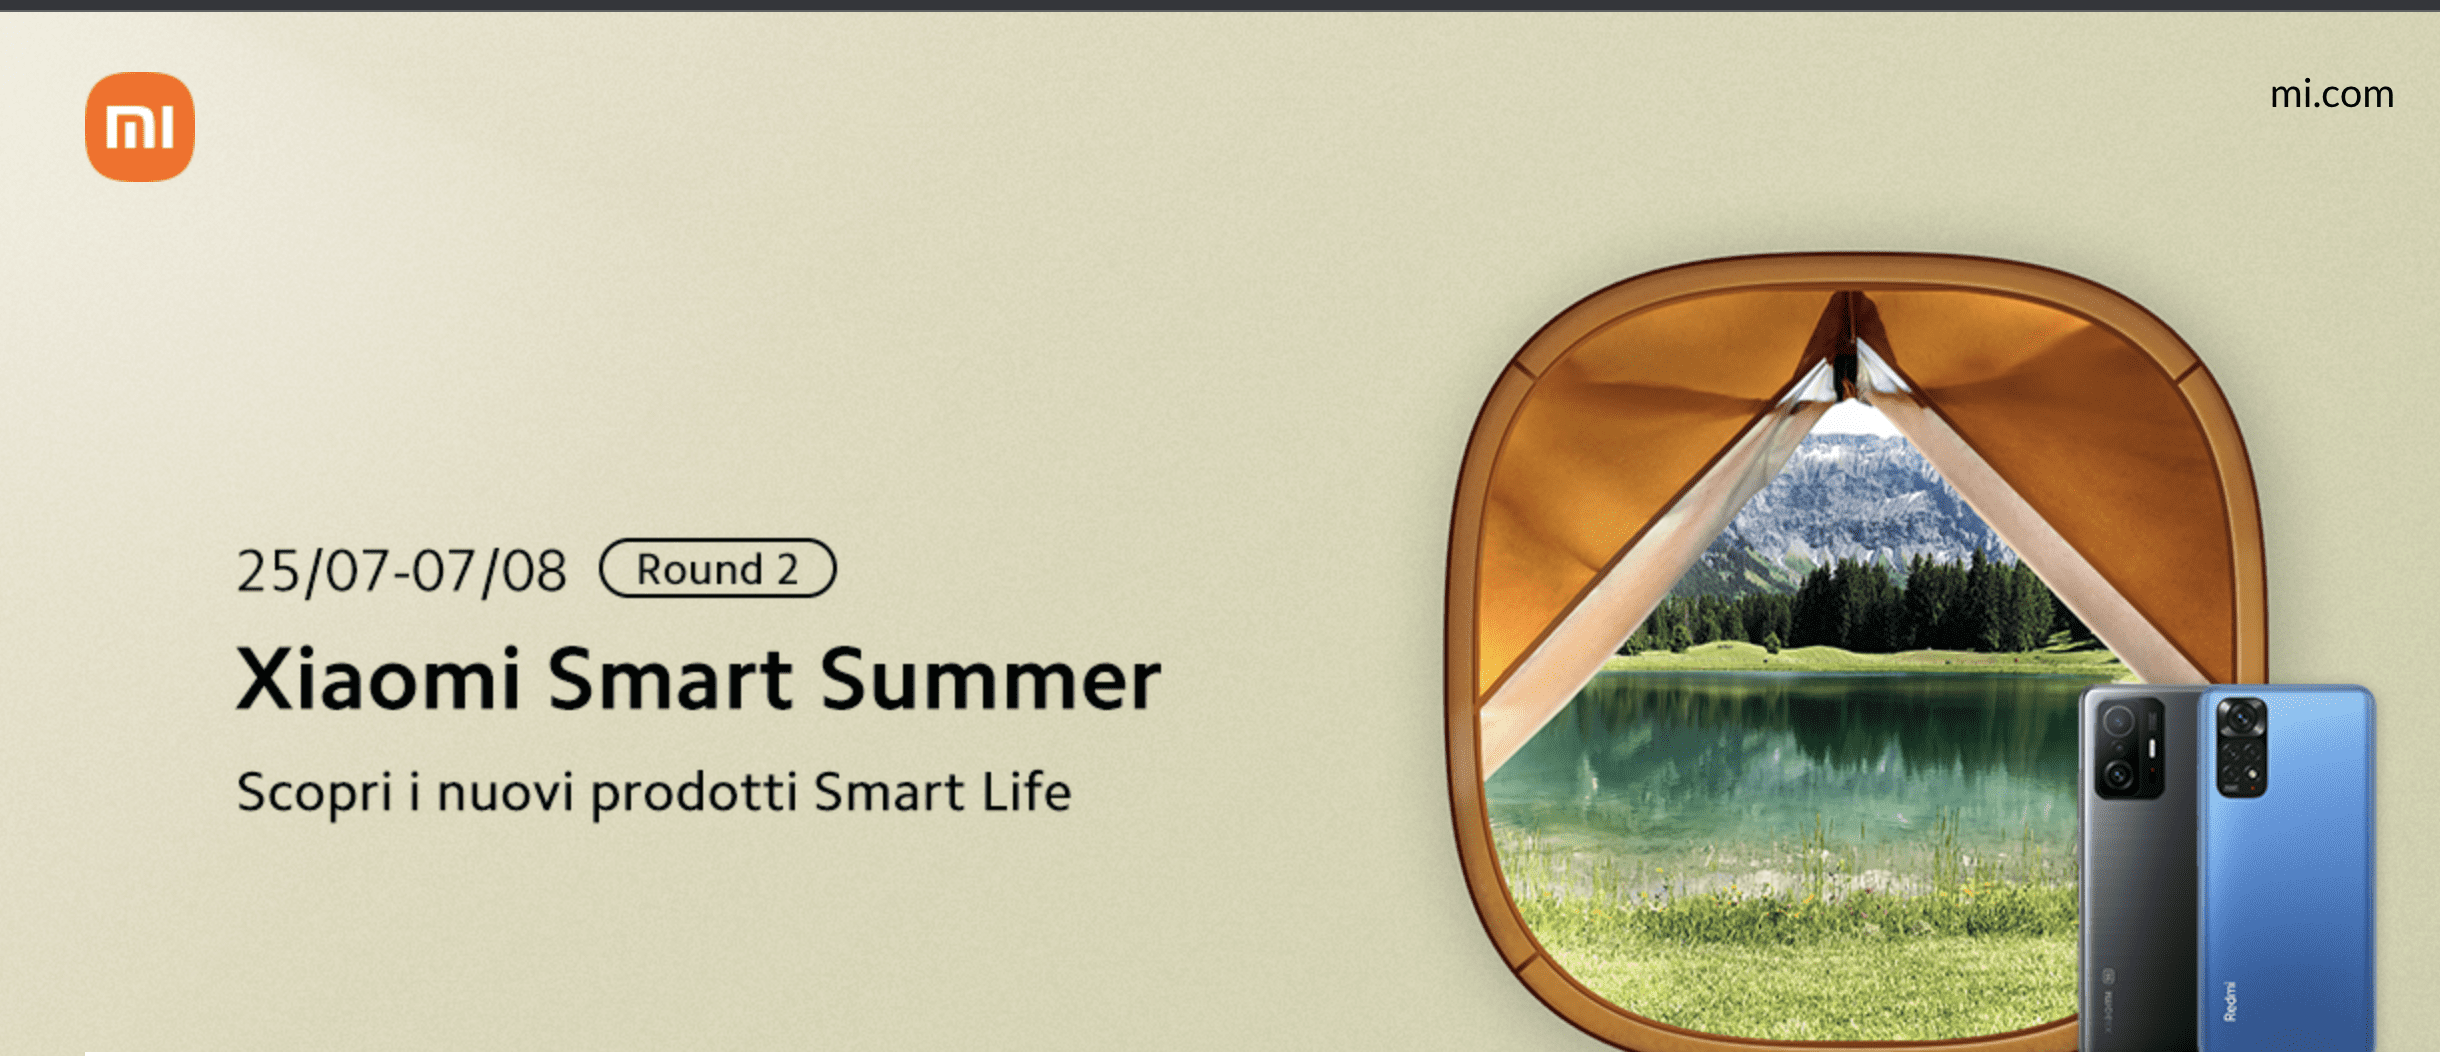 Xiaomi Summer smart